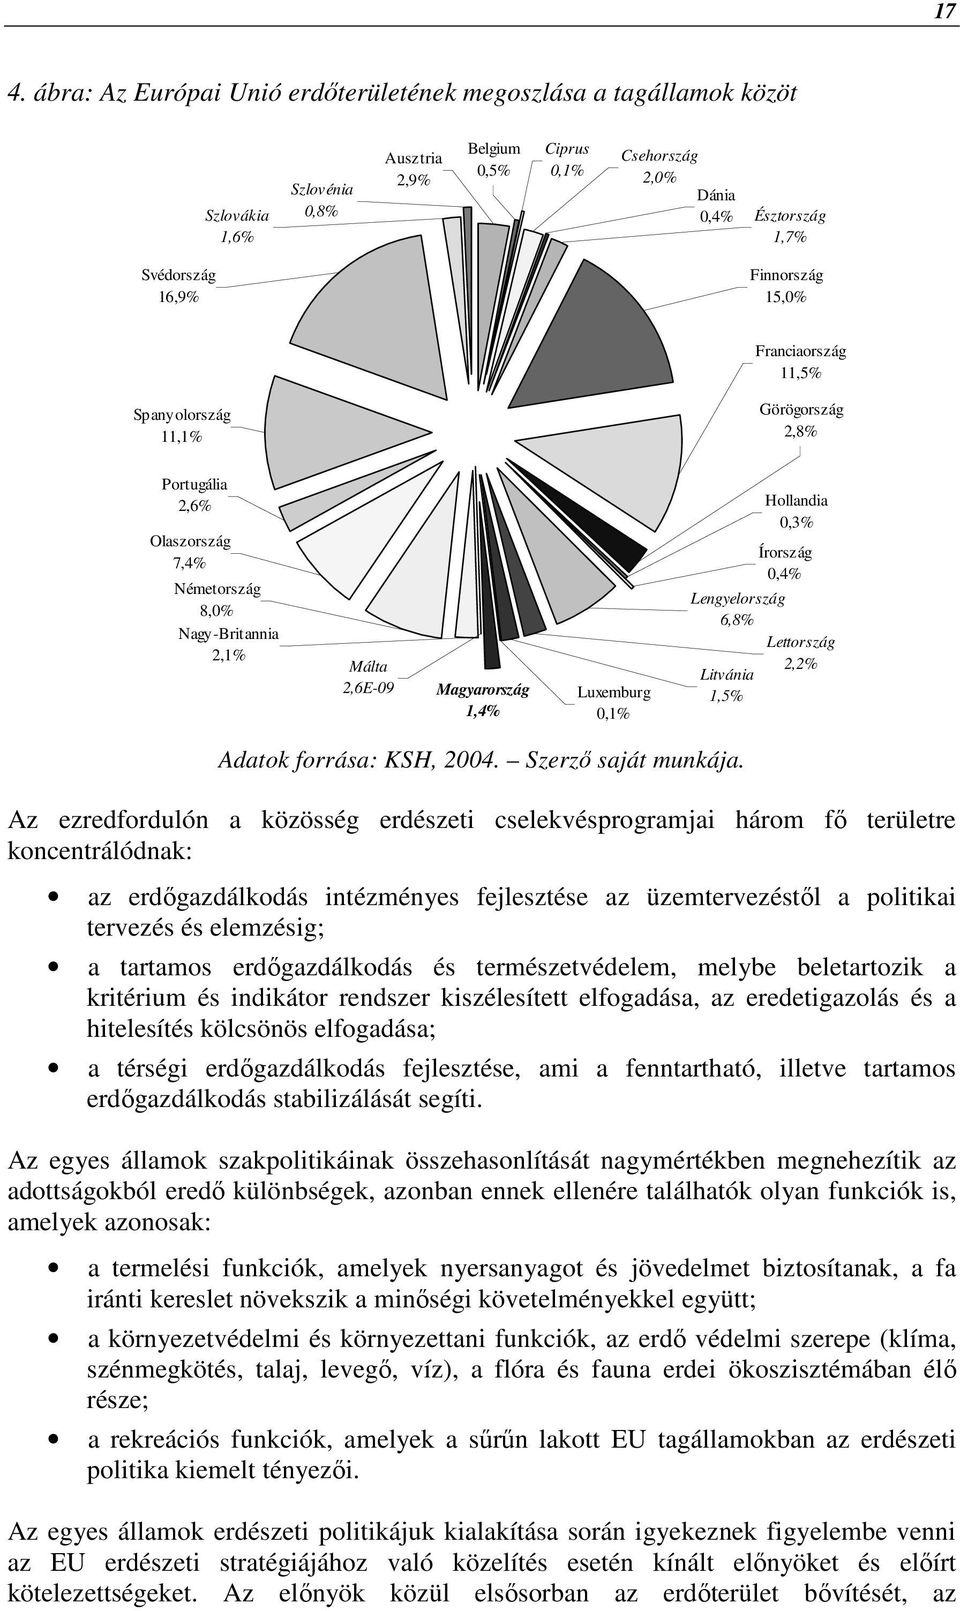 Lengyelország 6,8% Litvánia 1,5% Hollandia 0,3% Írország 0,4% Lettország 2,2% Adatok forrása: KSH, 2004. Szerzı saját munkája.